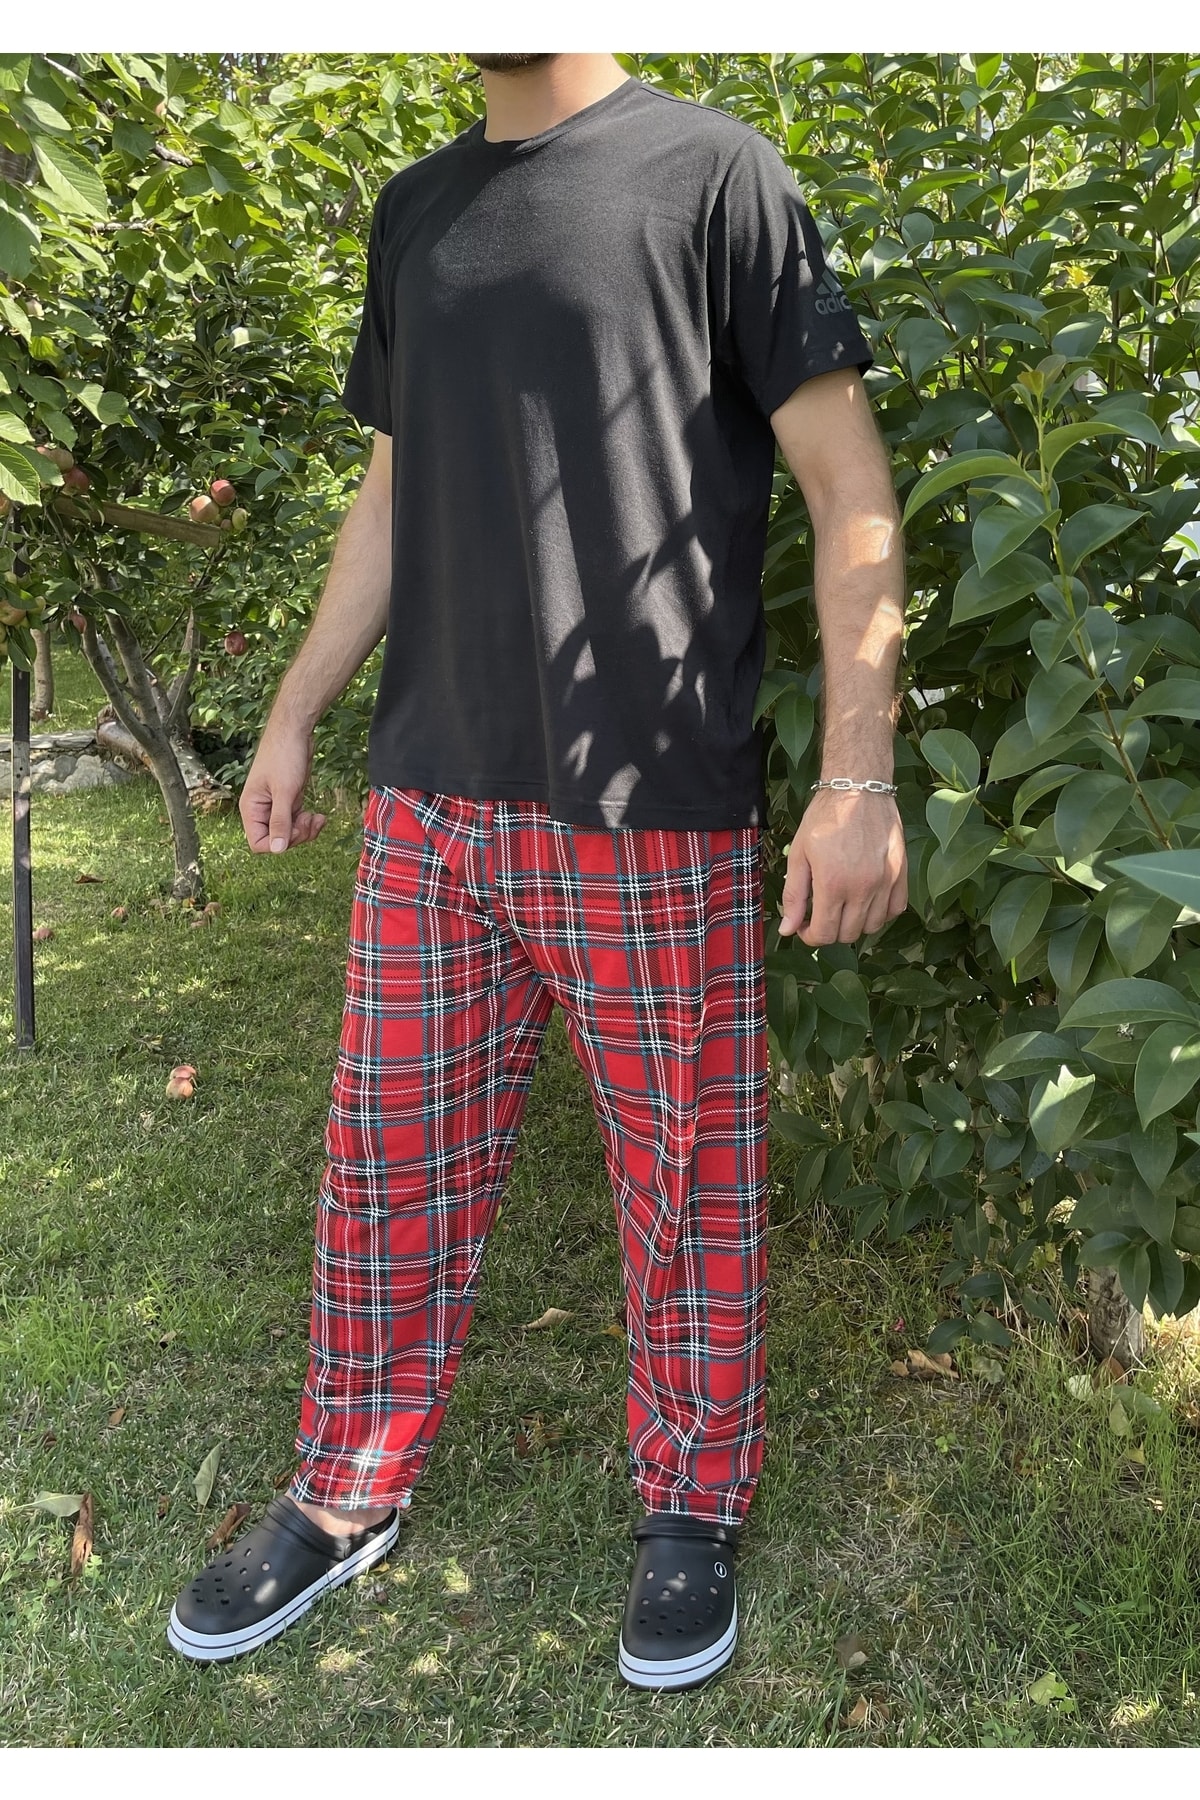 Betimoda Erkek %100 Pamuk Cepsiz Beli Lastikli Pijama Altı Eşofman Kırmızı Yeşil Kare